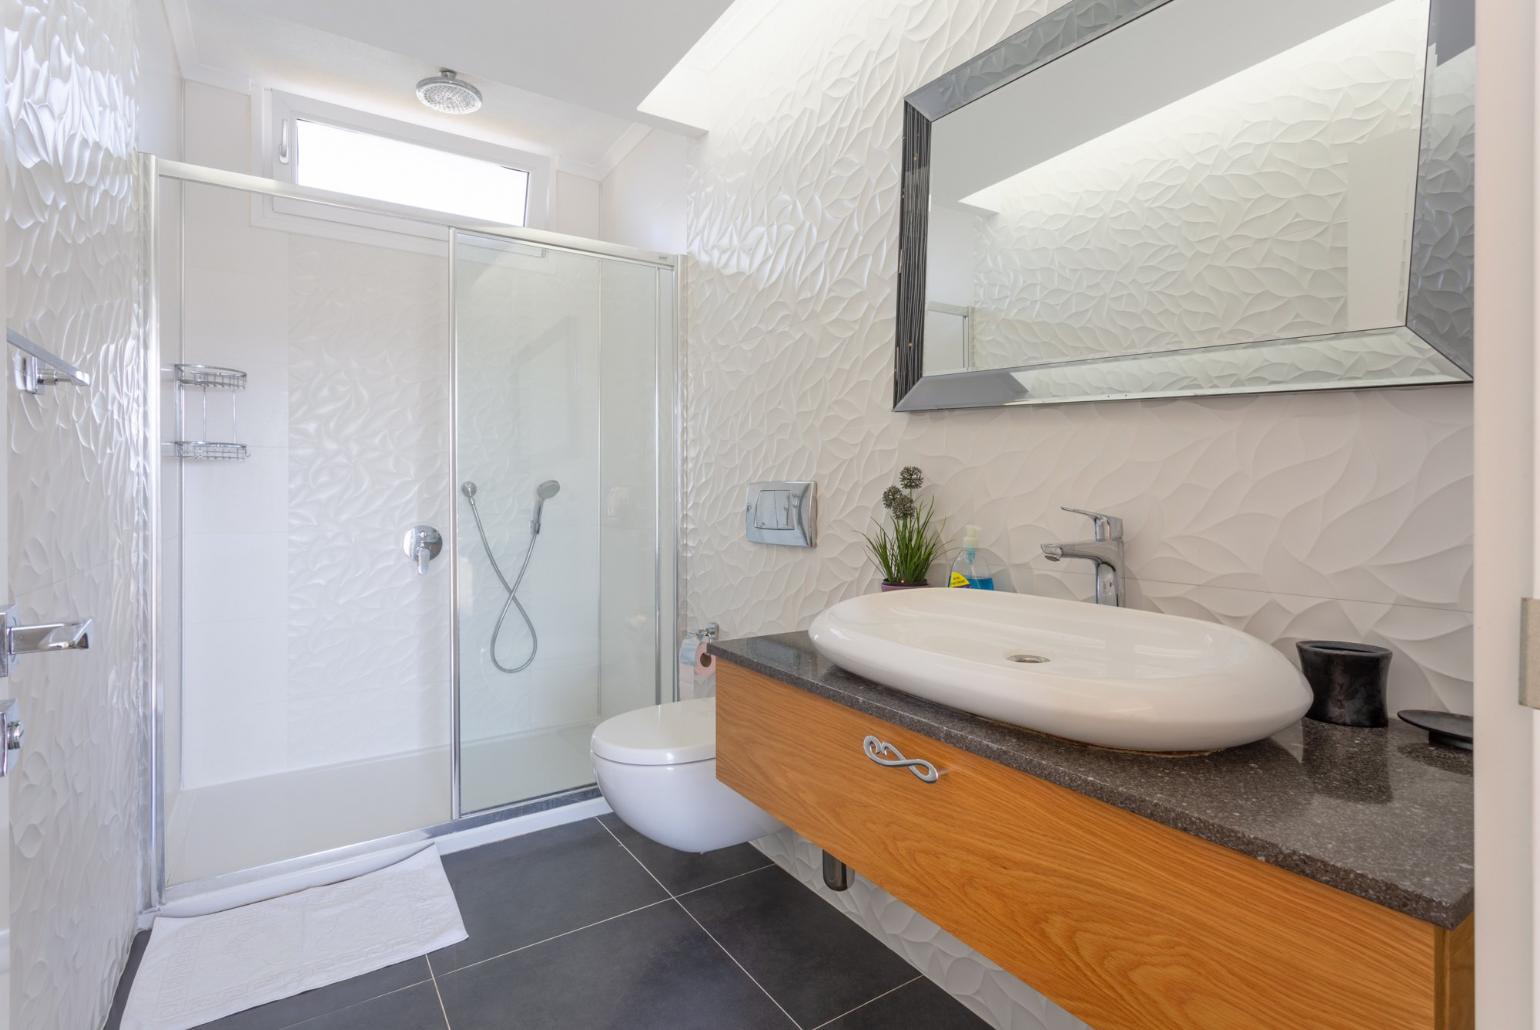 En suite bathroom with overhead shower